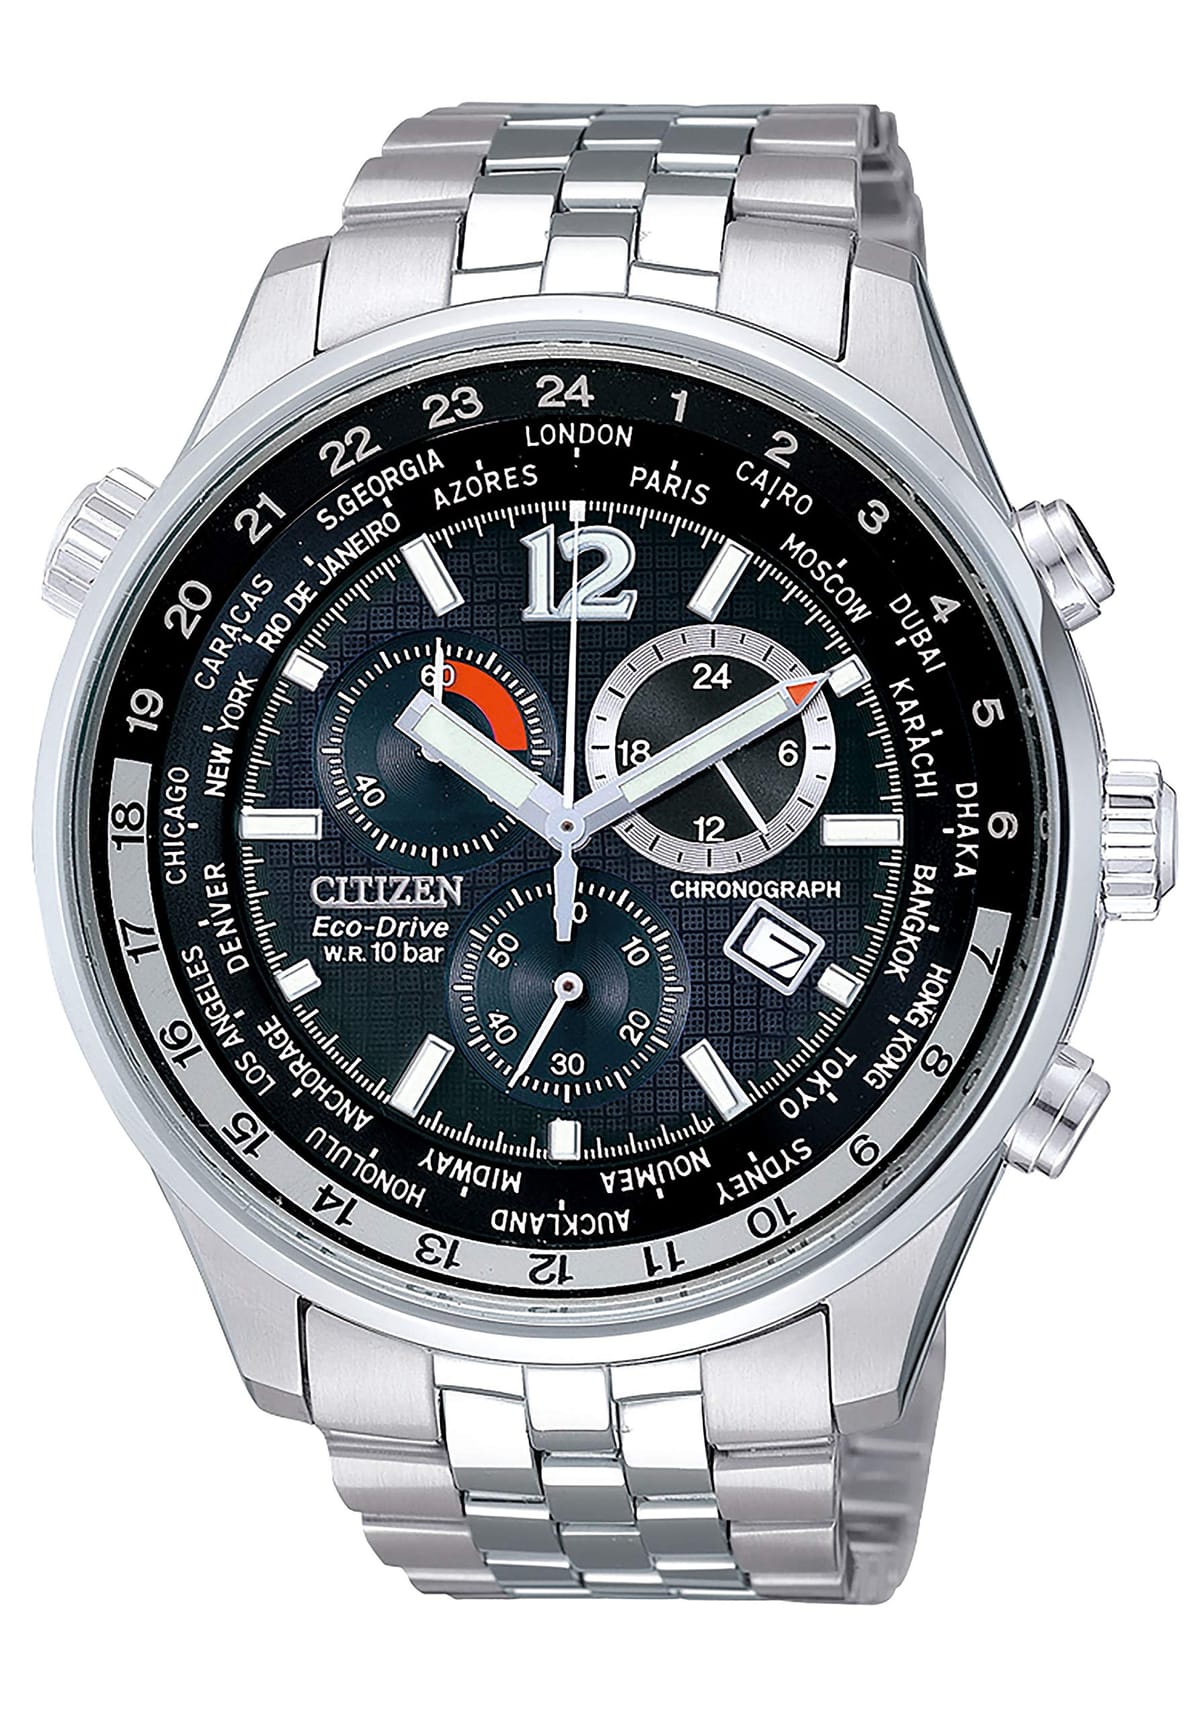 [シチズン] 腕時計 CITIZEN海外モデル エコ・ドライブ 特定店取扱いモデル AT0365-56E メンズ シルバー